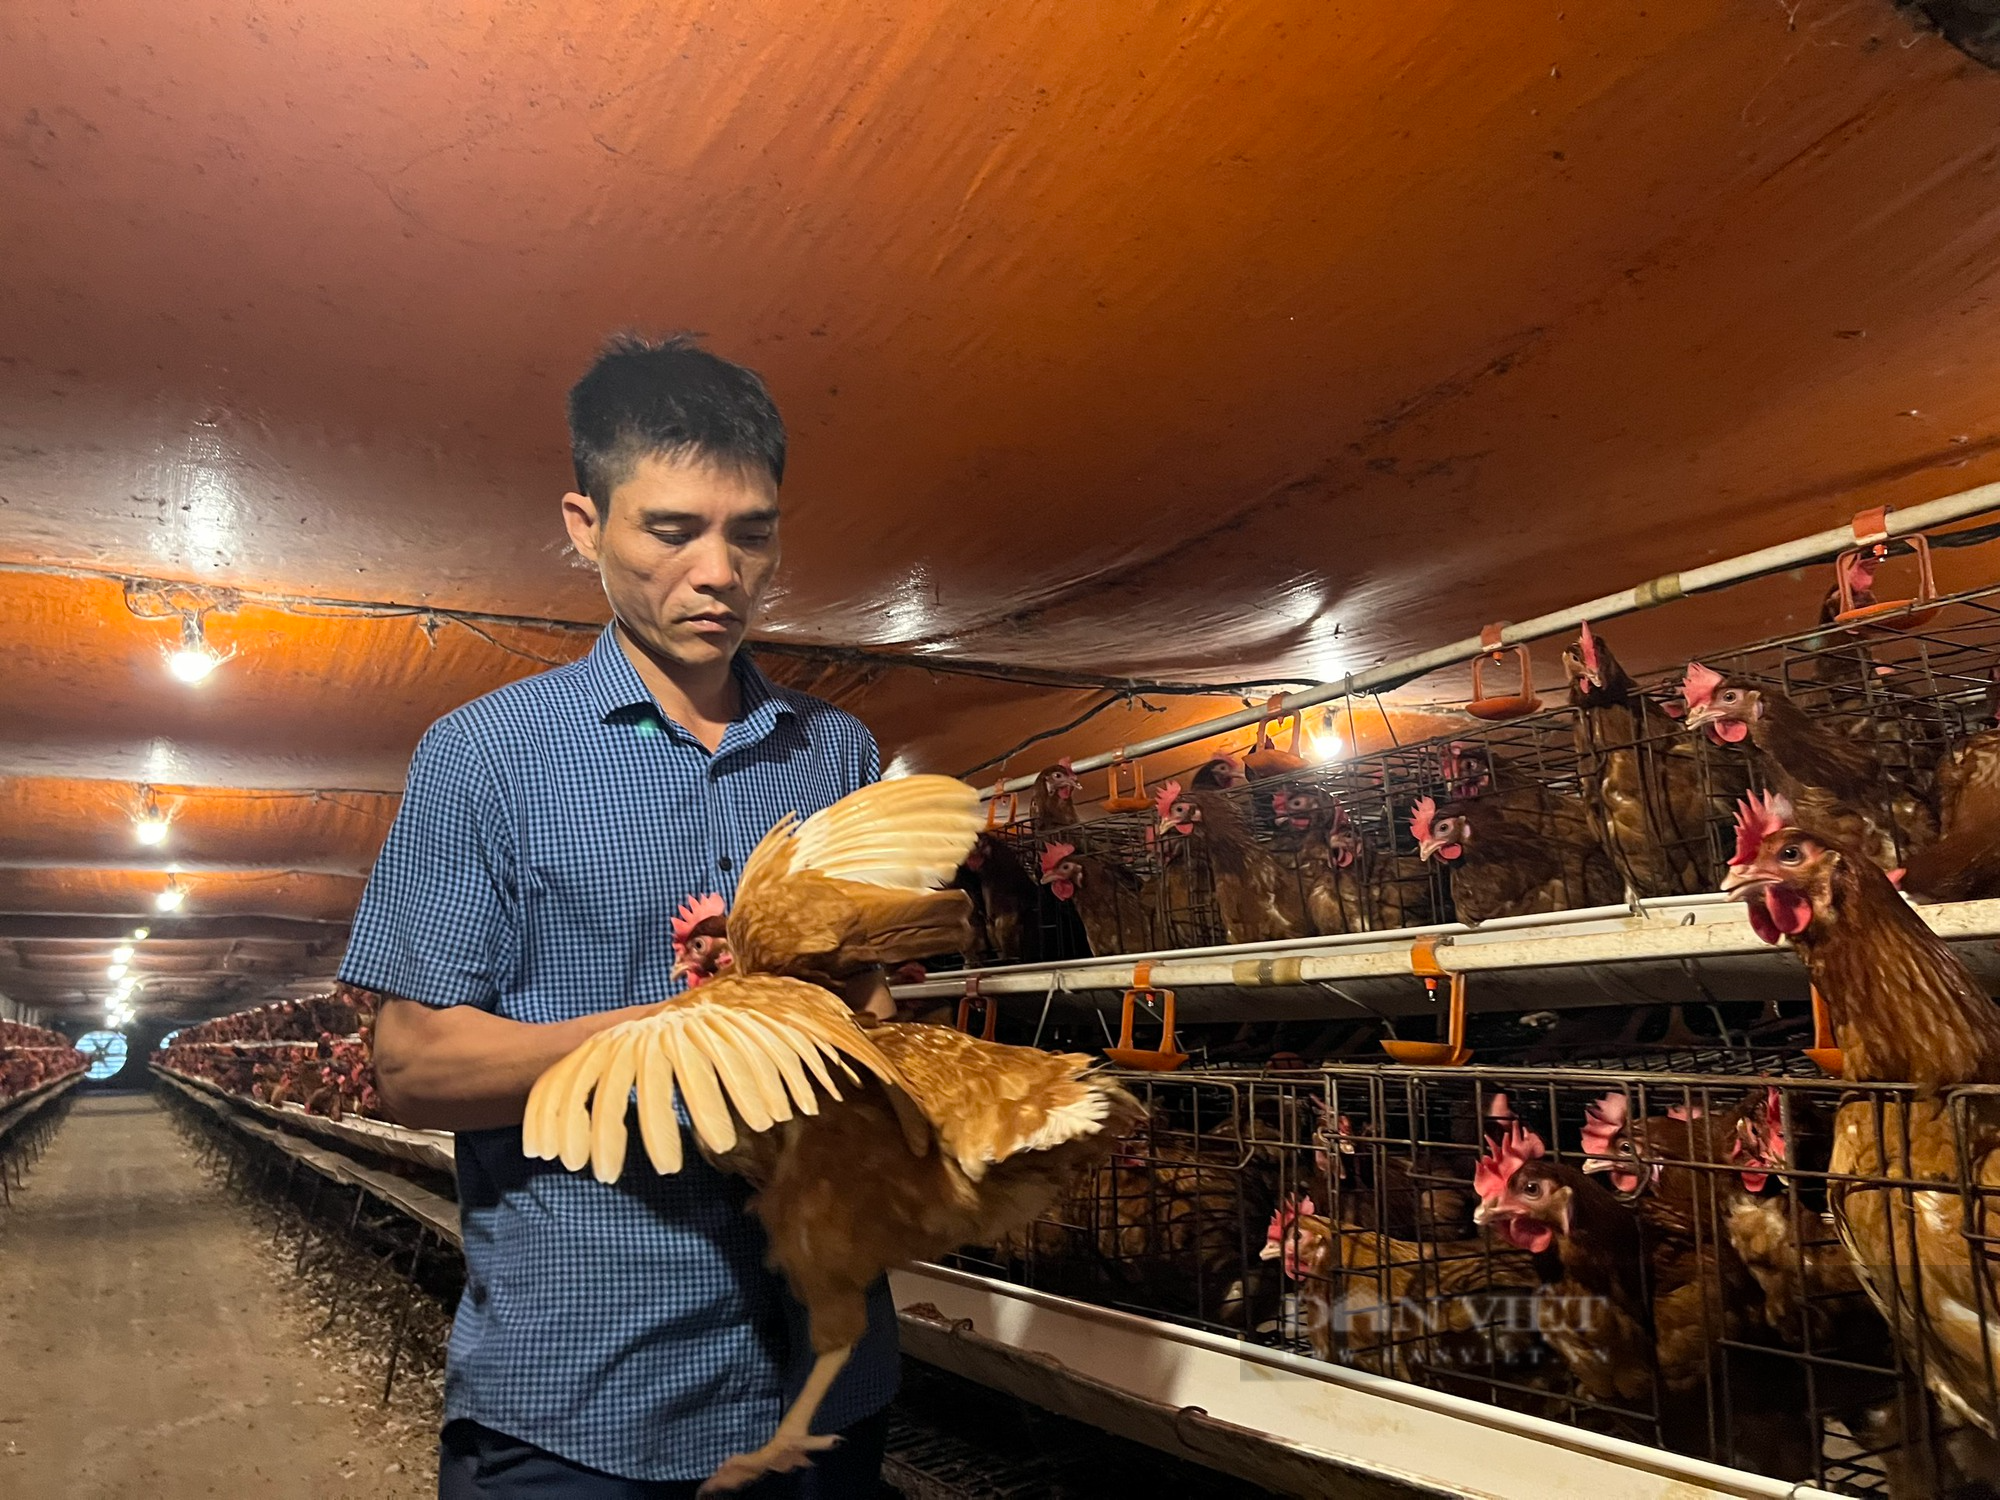 Từ 500 con gà đẻ, sau hơn 10 năm anh nông dân ở Thanh Hóa nhặt hơn 18.000 quả trứng/ngày - Ảnh 2.